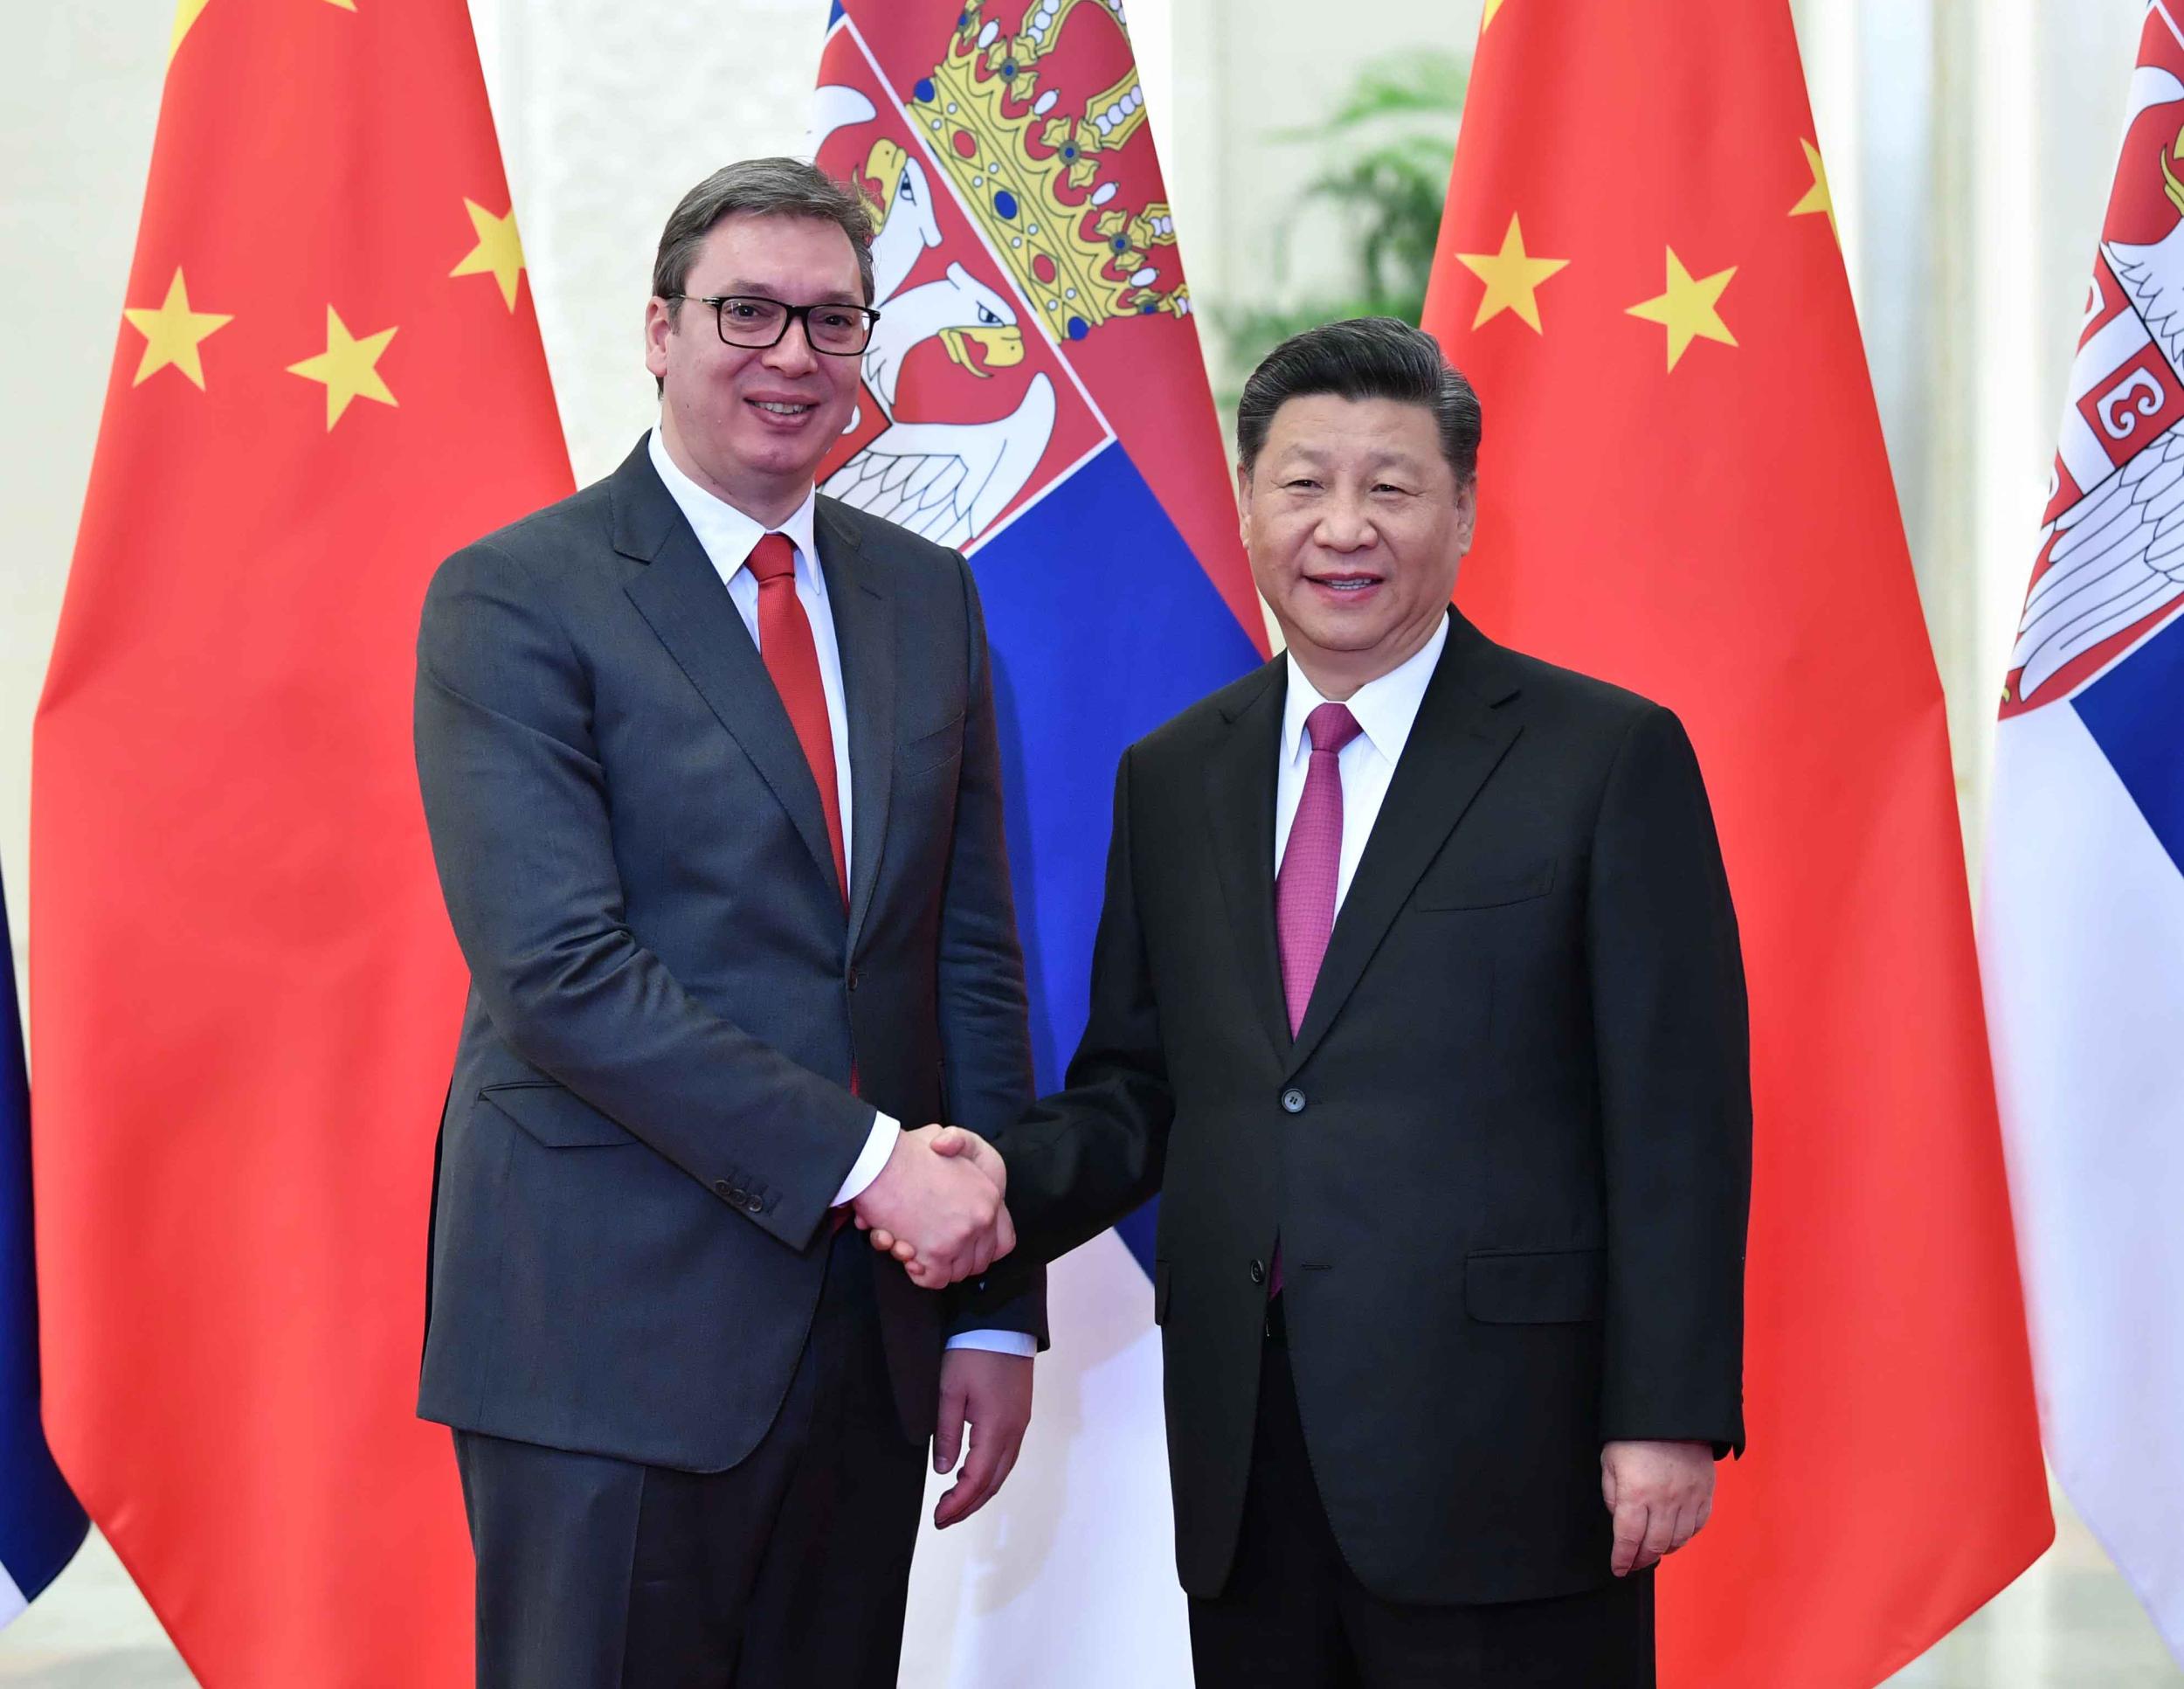 塞尔维亚总统武契奇强调重视发展对华关系 | 每经网